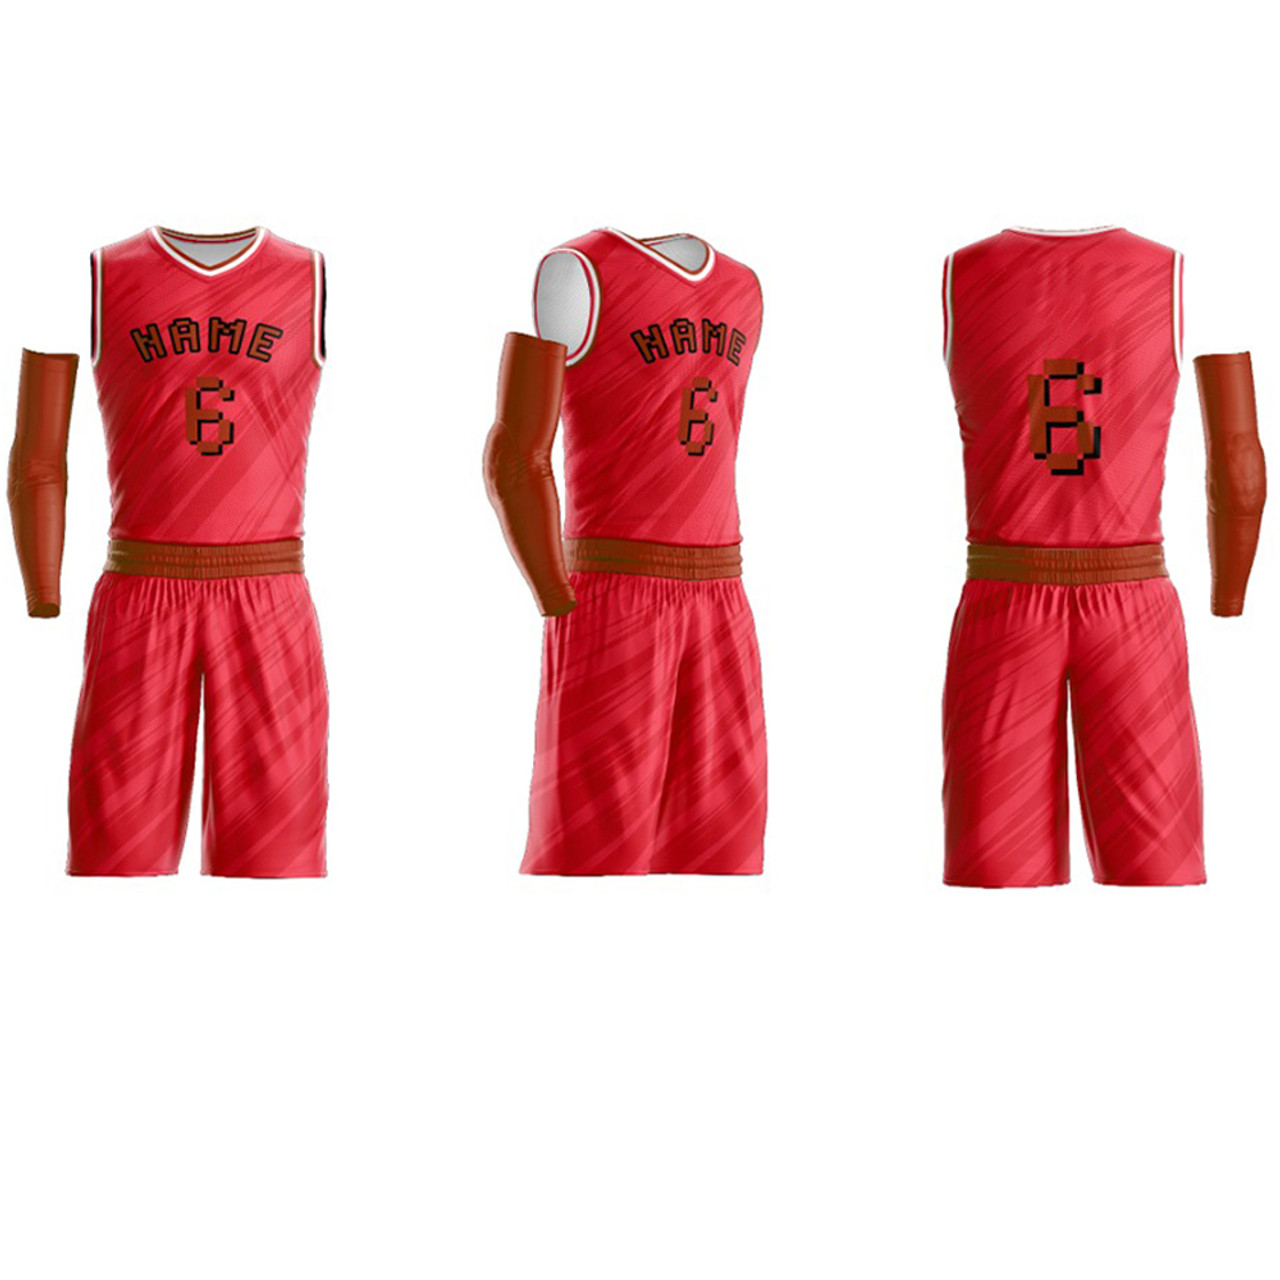 CanoCastillo Custom Basketball Jersey Team Name & Number Shirt, Basketball Jersey Team Shirt, Basketball Jersey for Basketball Fan Lovers Players